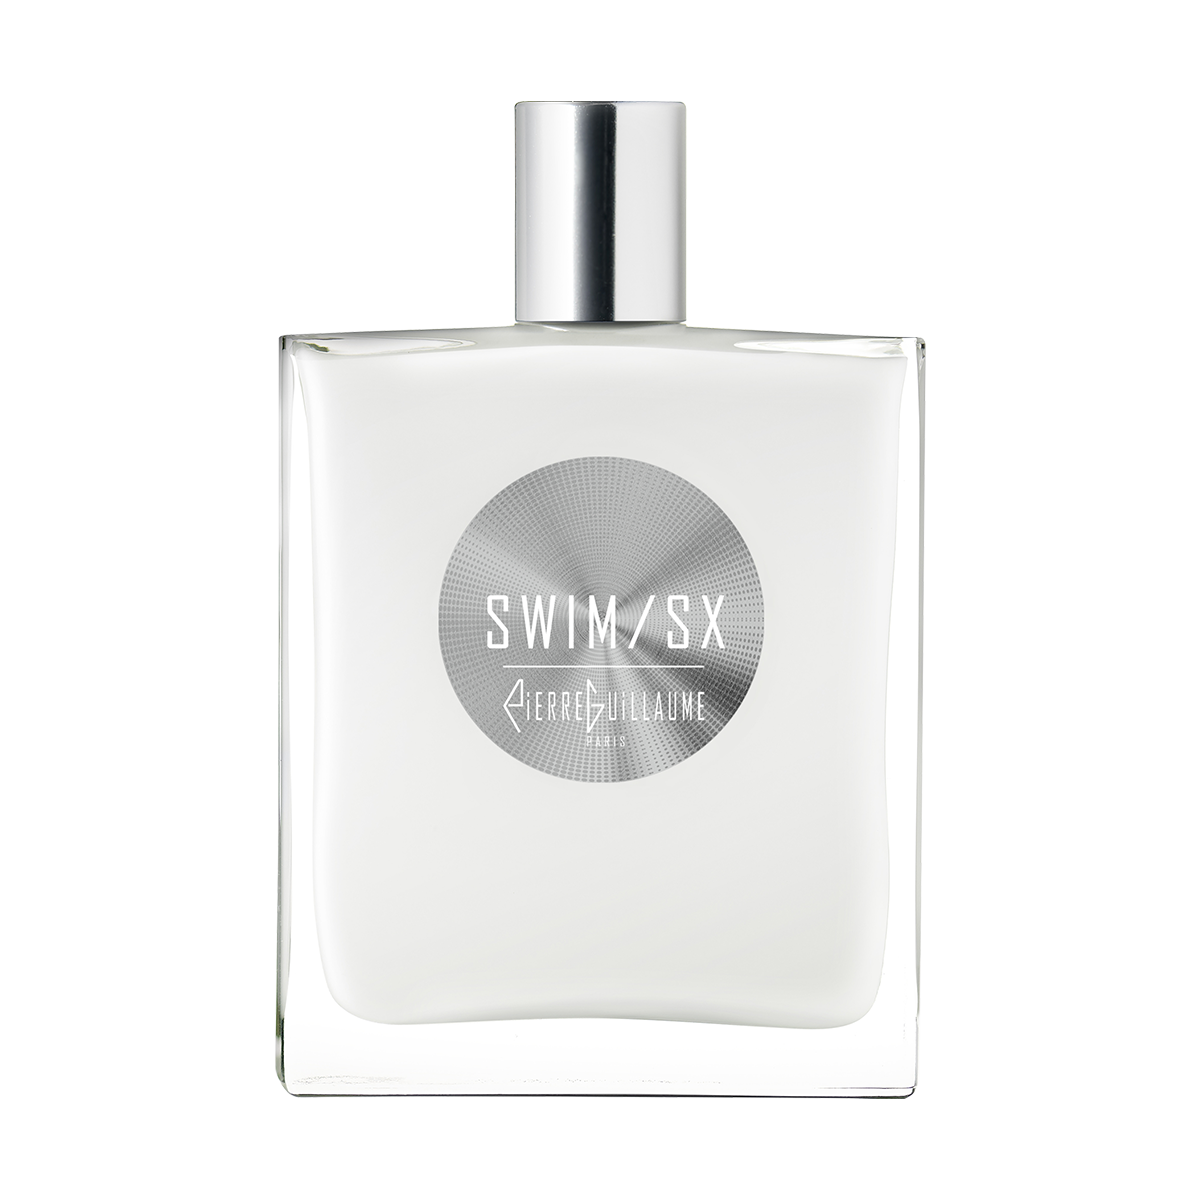 Swim-Sx-Best-Seller, Parfum 100ml, Chanvre Indien, Bois d’Okoumé et bois de rose, Muscs